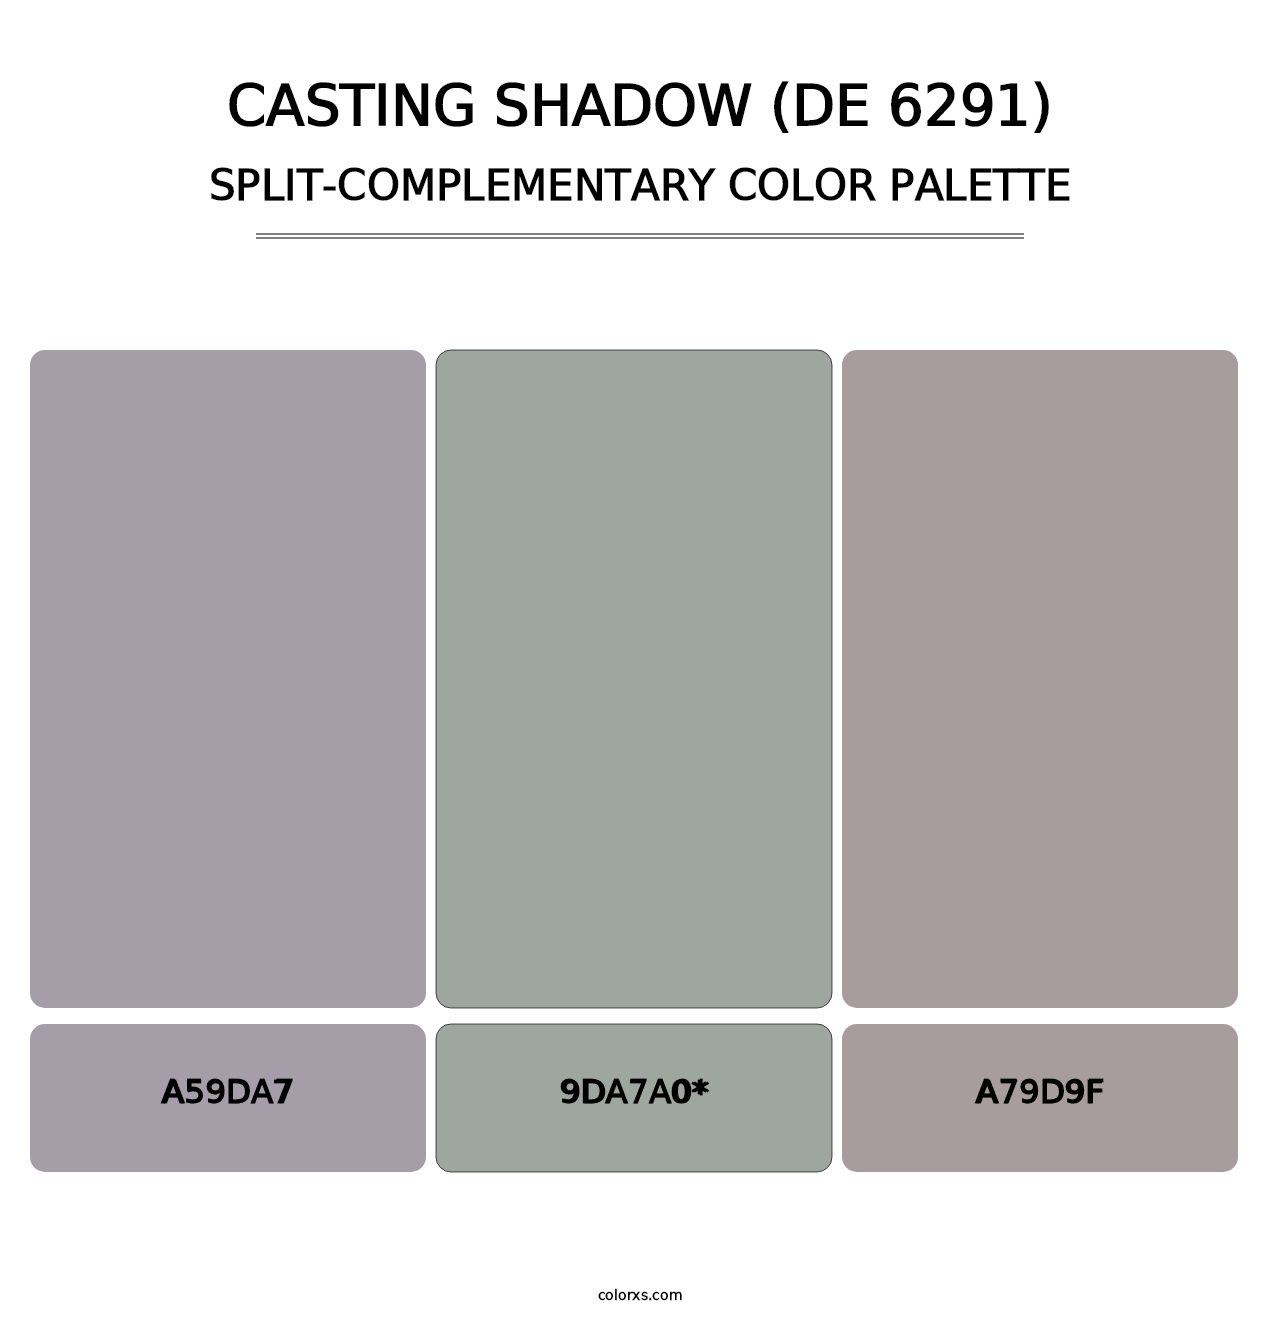 Casting Shadow (DE 6291) - Split-Complementary Color Palette